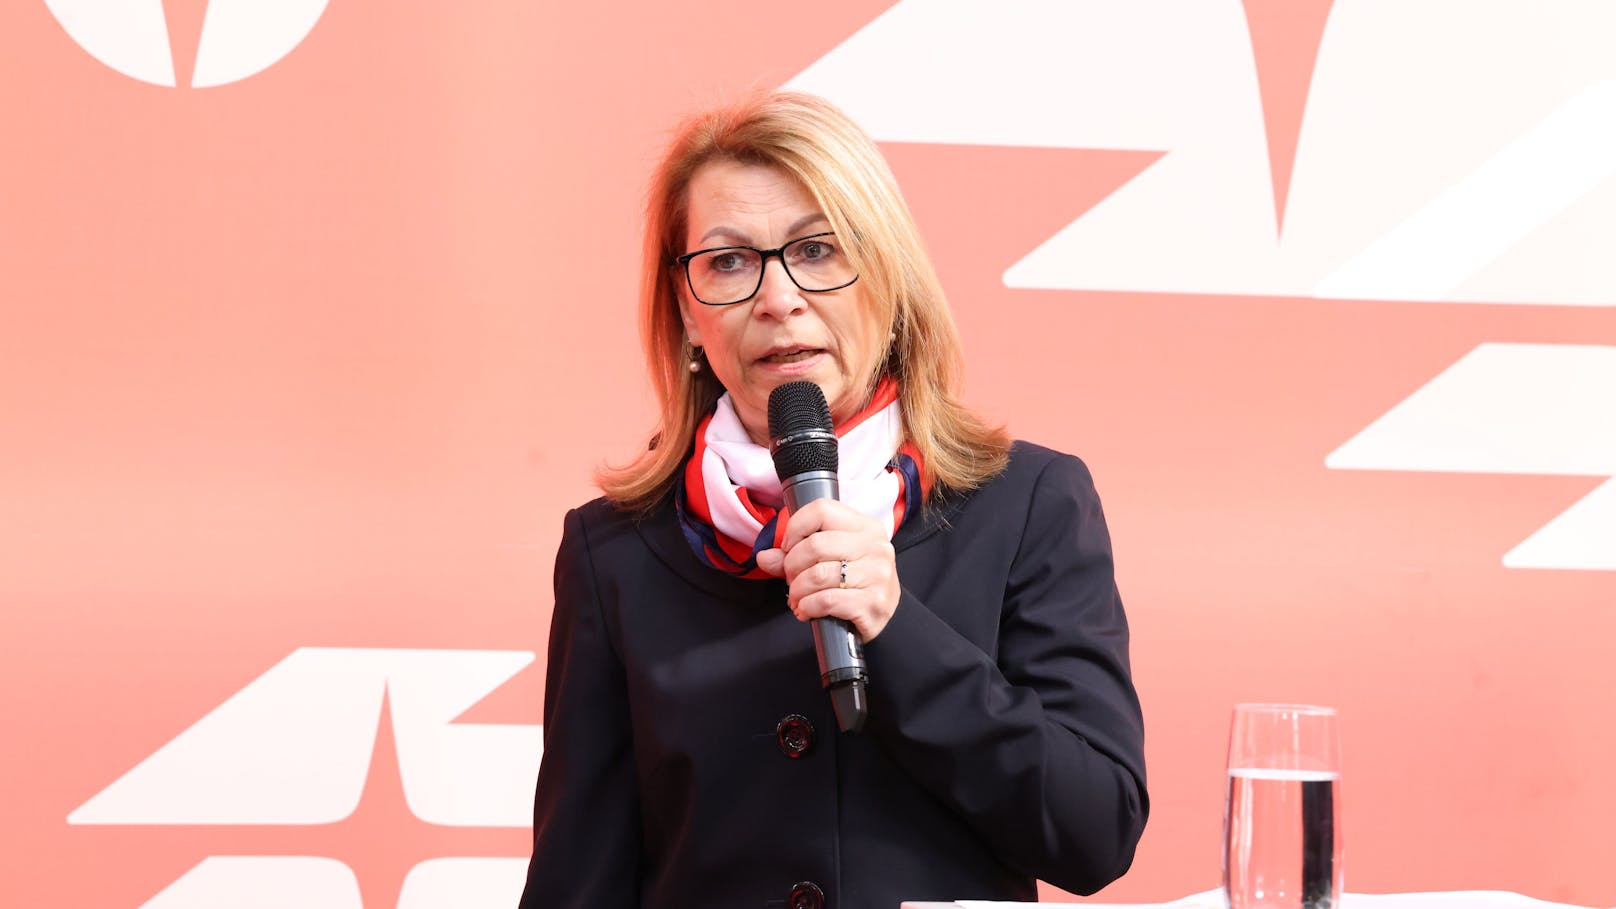 Alexandra Reinagl, Vorsitzende Geschäftsführerin der Wiener Linien, ist stolz auf die Verlässlichkeit der Wiener Linien.